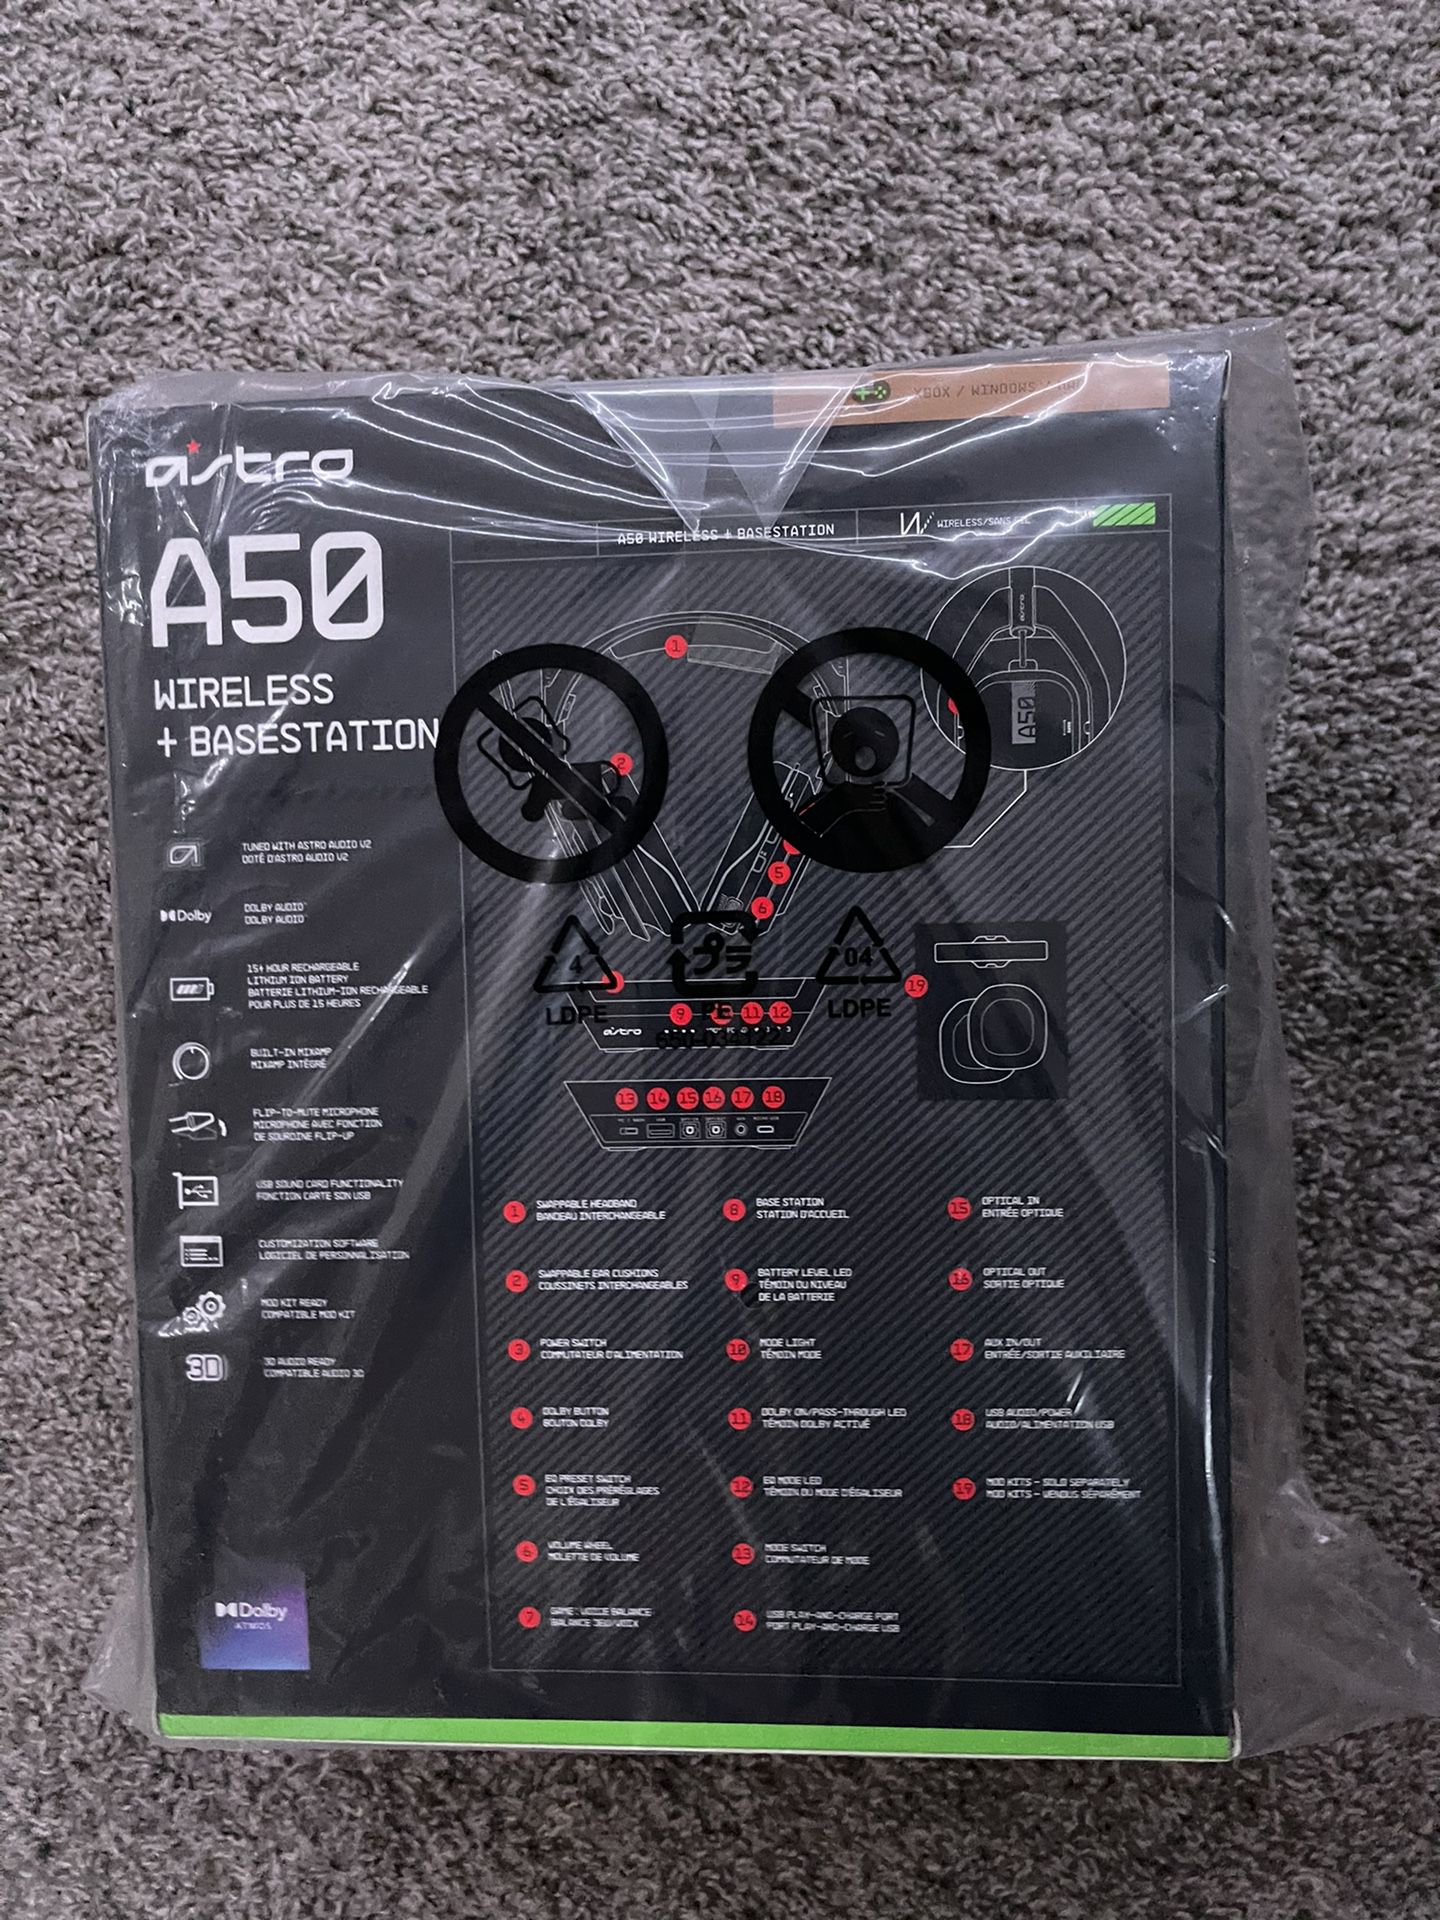 Astro A50 Brand New